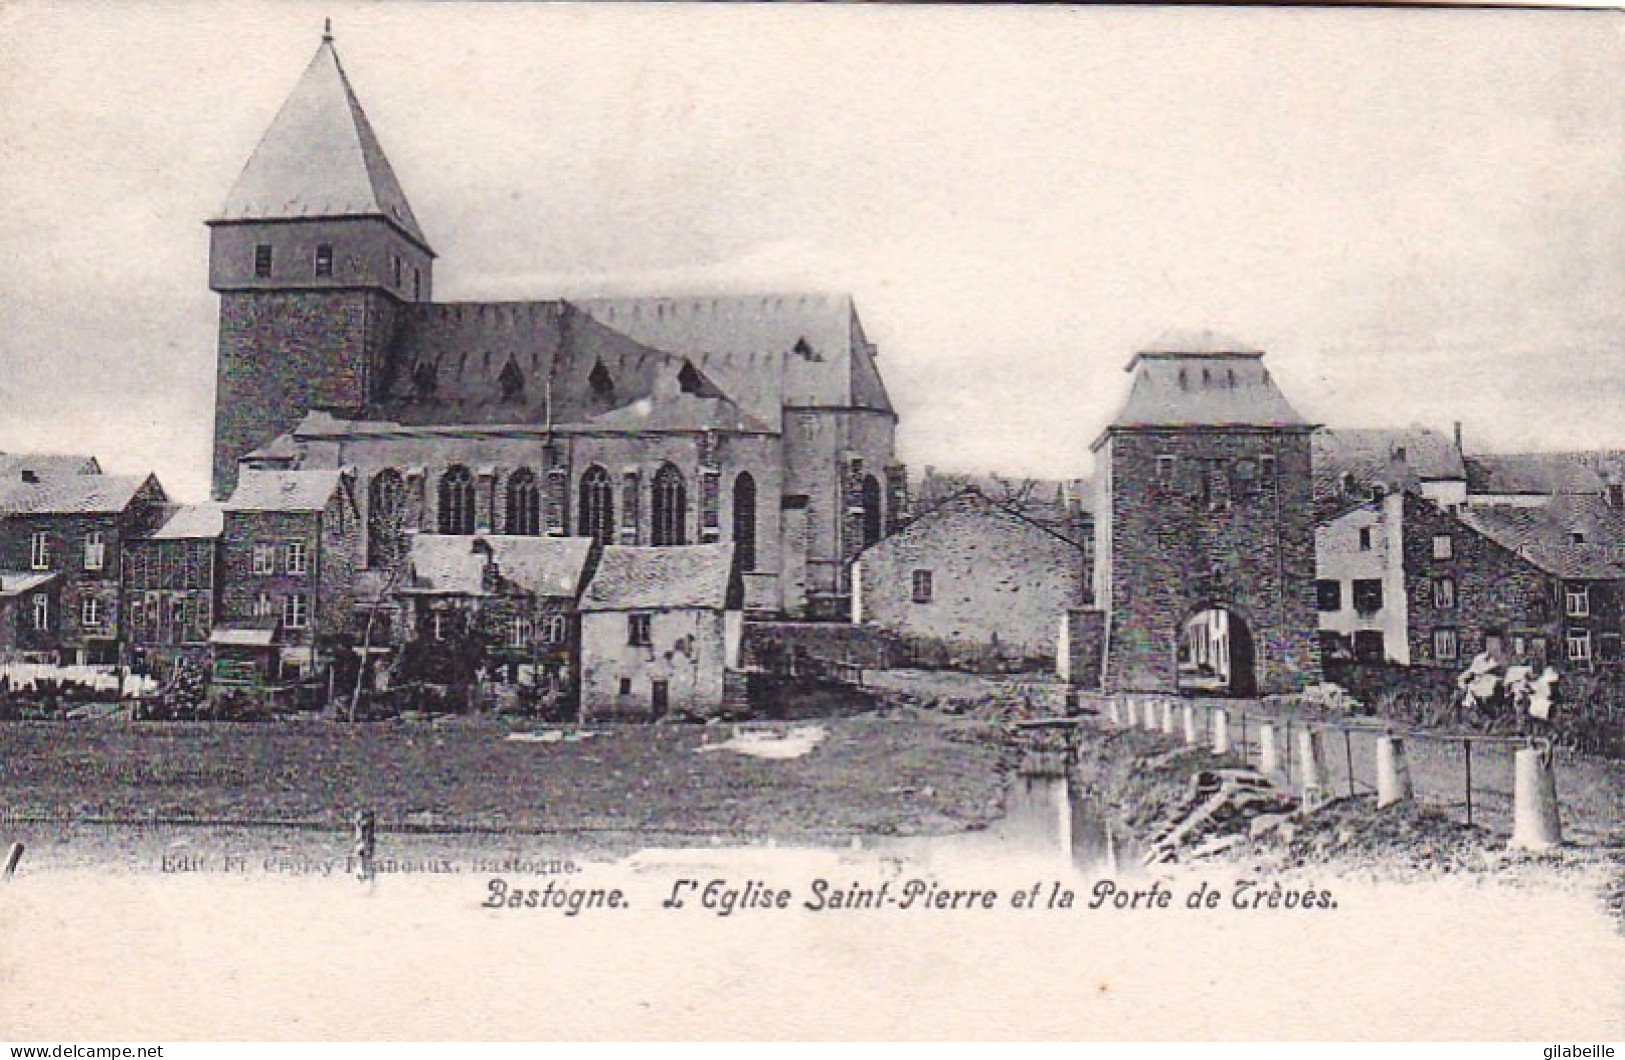  BASTOGNE  -  L'église Saint Pierre Et La Porte De Treves - Bastogne